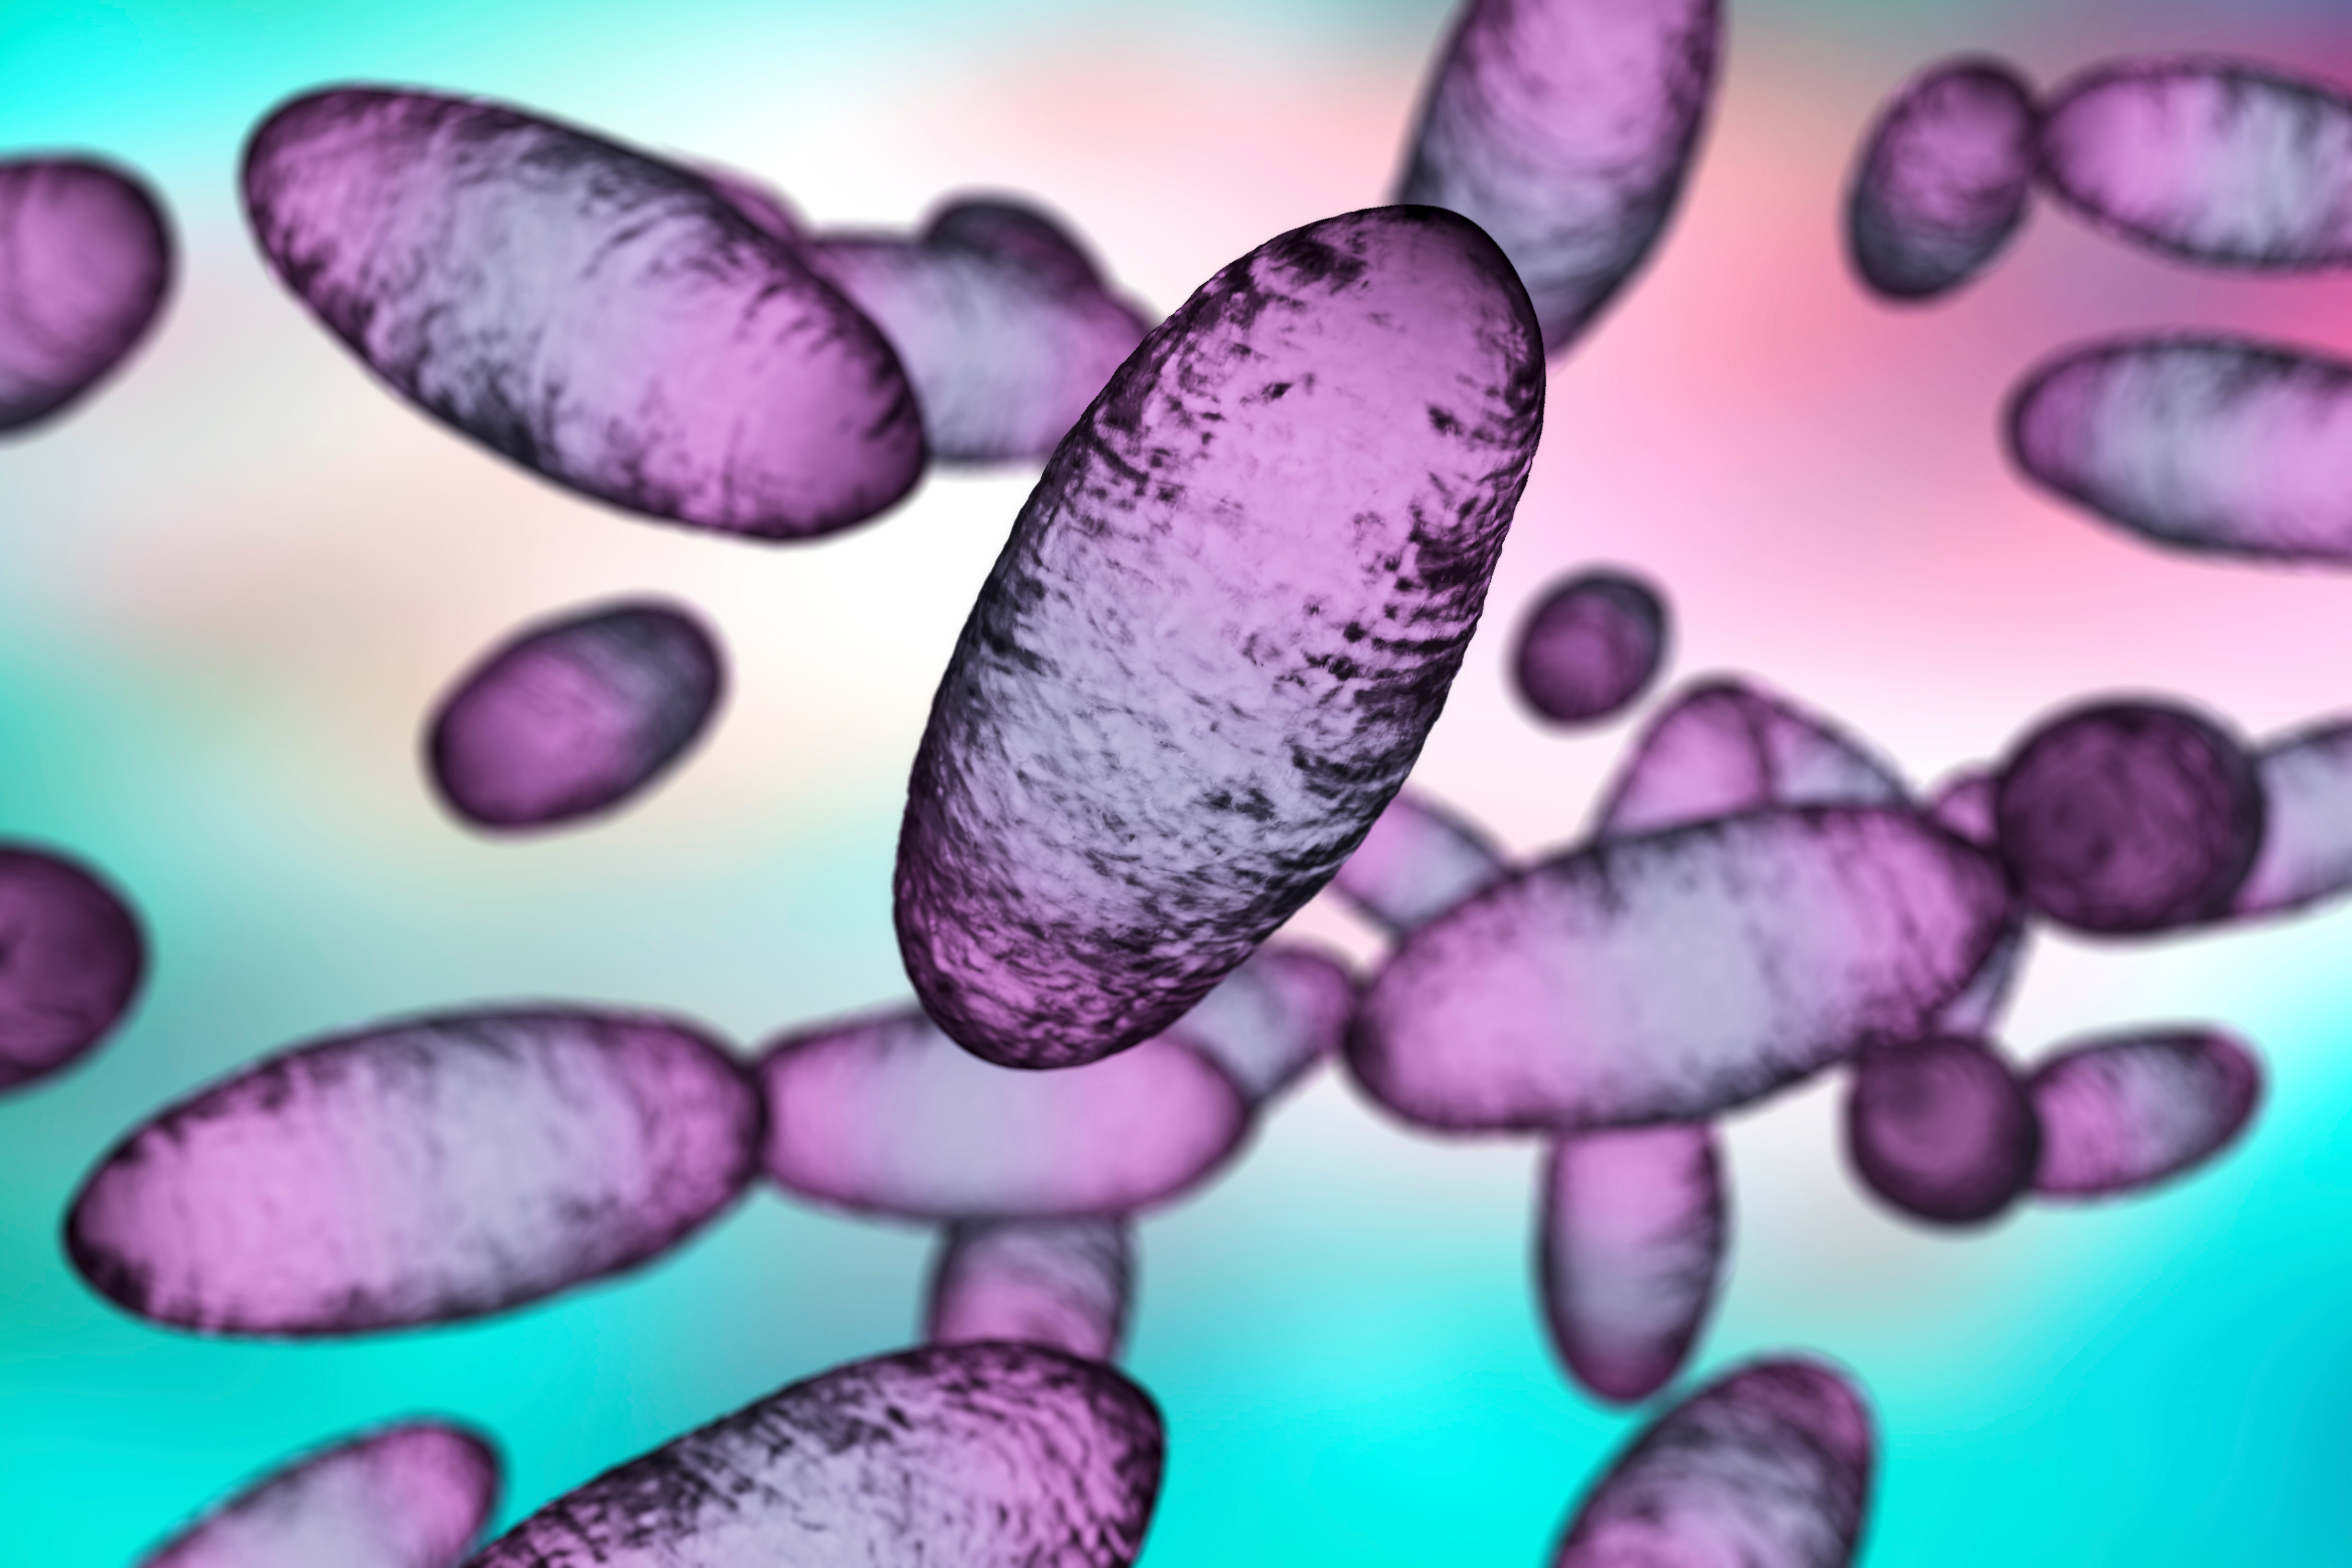 Bubópestis baktérium. A 3D-s illusztráció a baktériumok bipoláris festését és tojásdad alakját mutatja. (Forrás: stock.adobe.com)